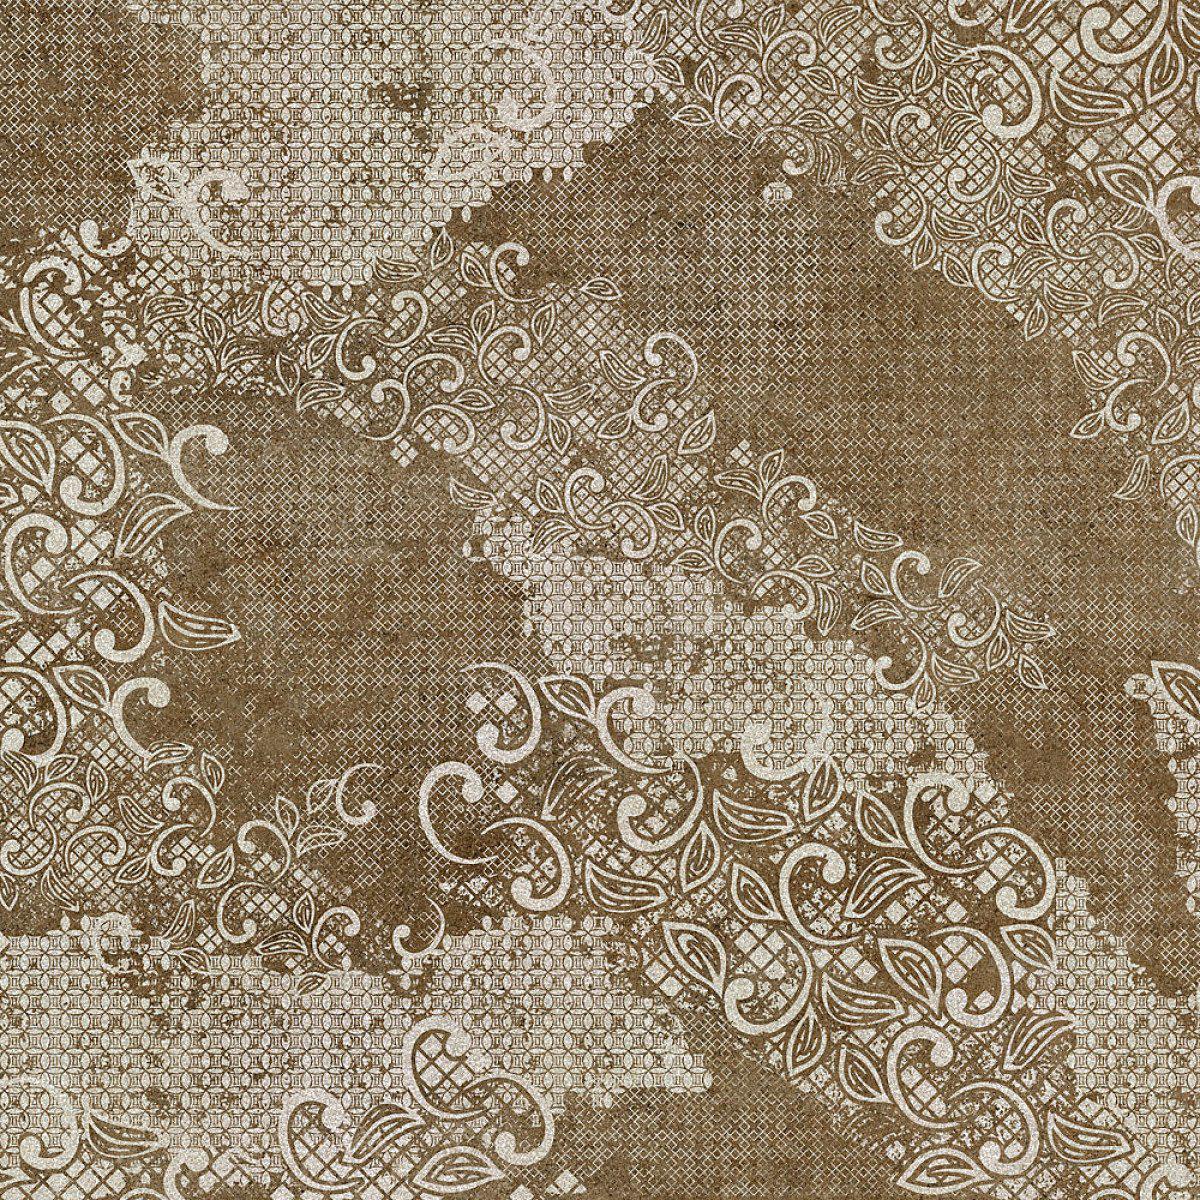 Starling-Digital Wallpaper-Tecnografica-Brown 1-62586-2